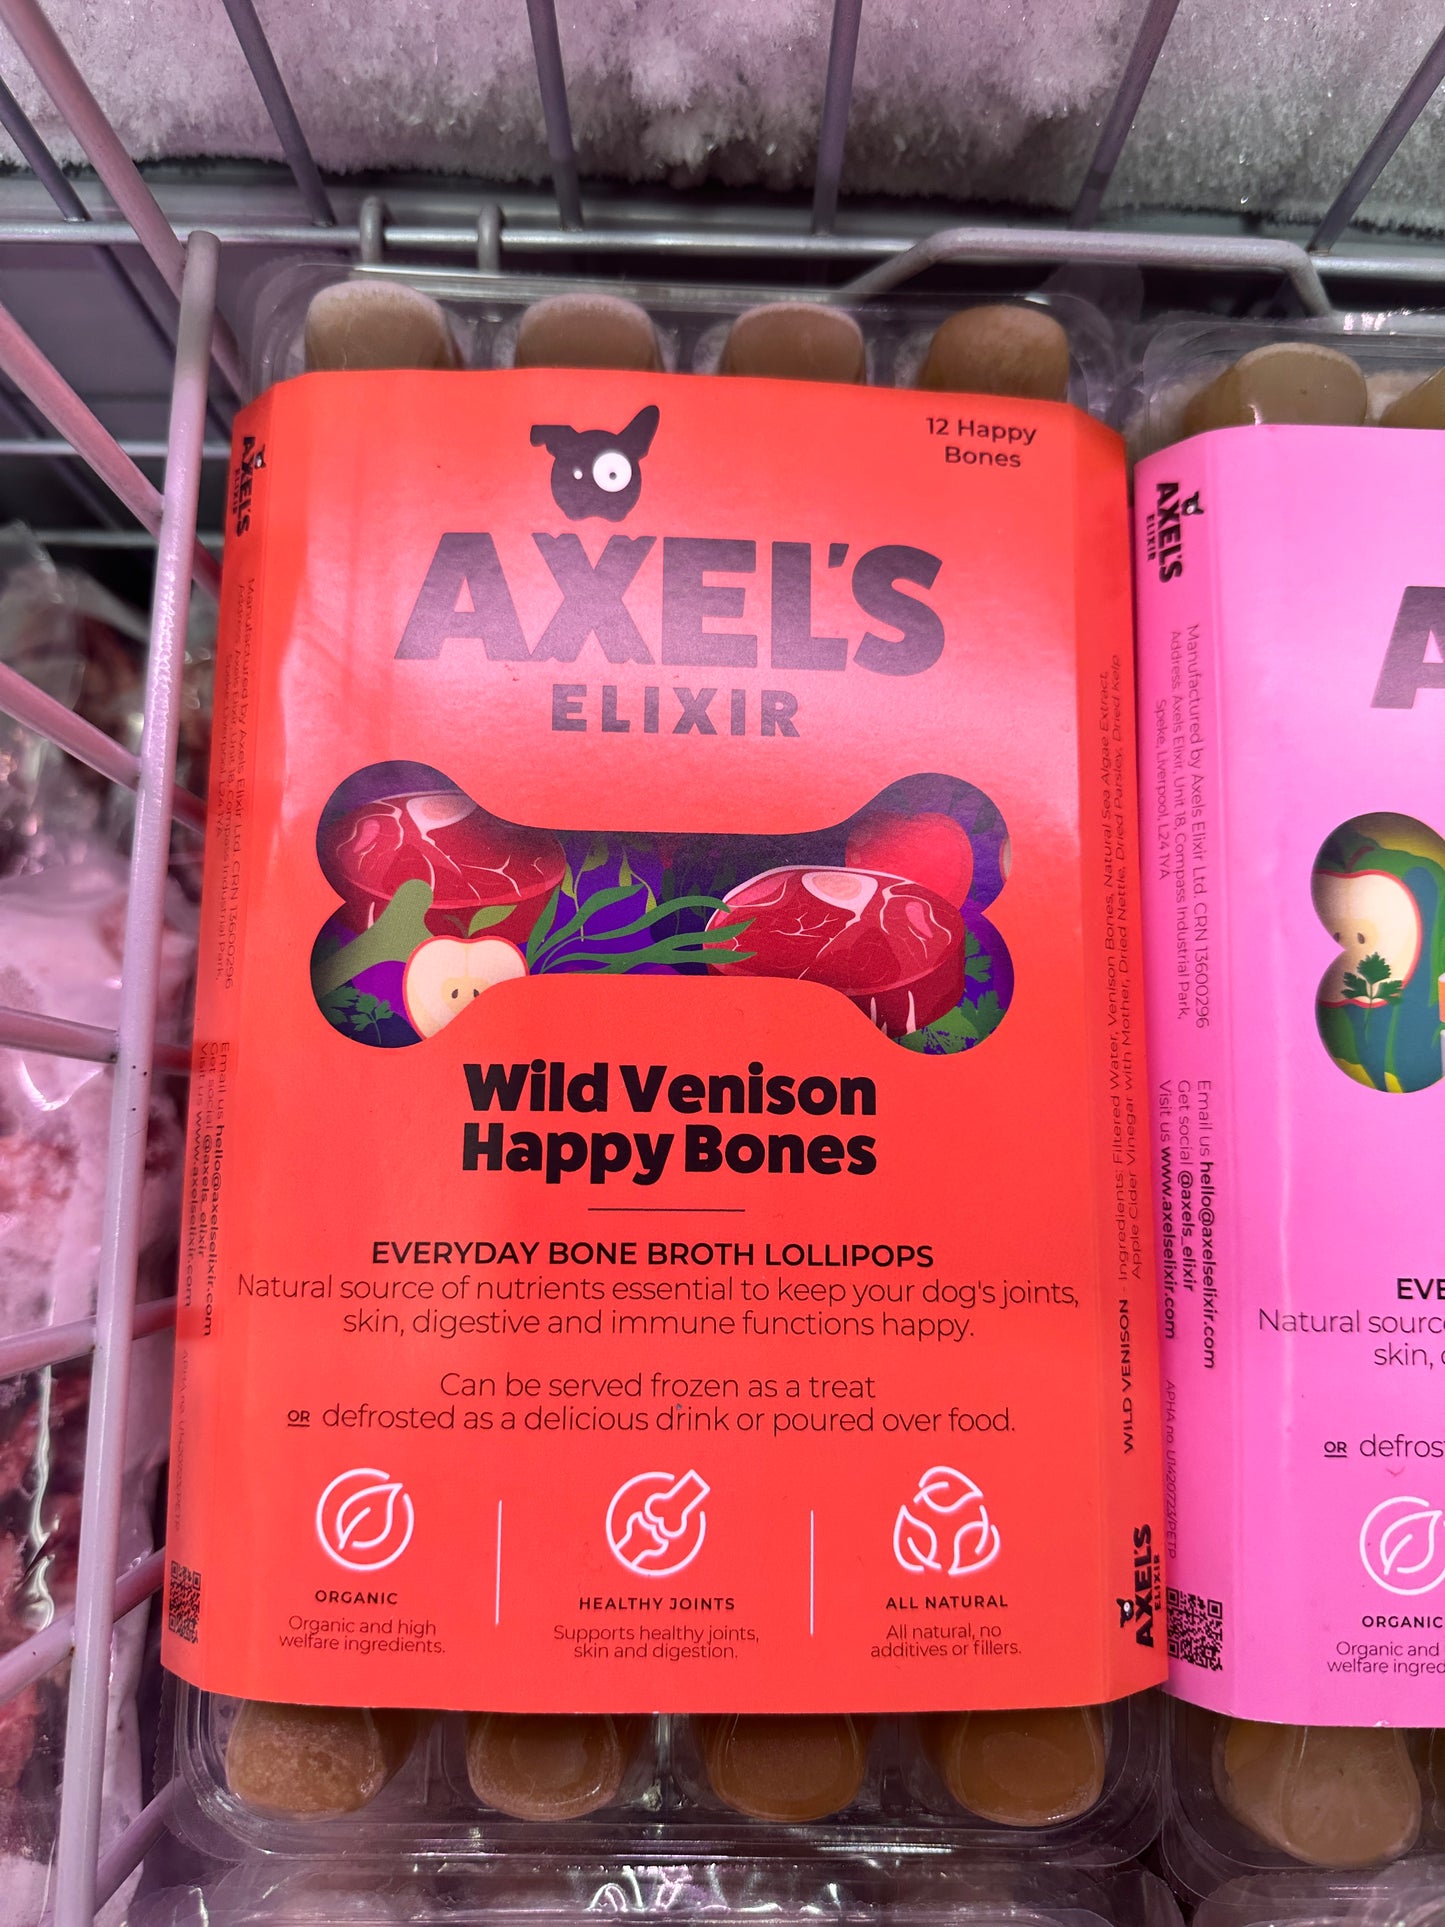 Axels Elixir Bone Broth